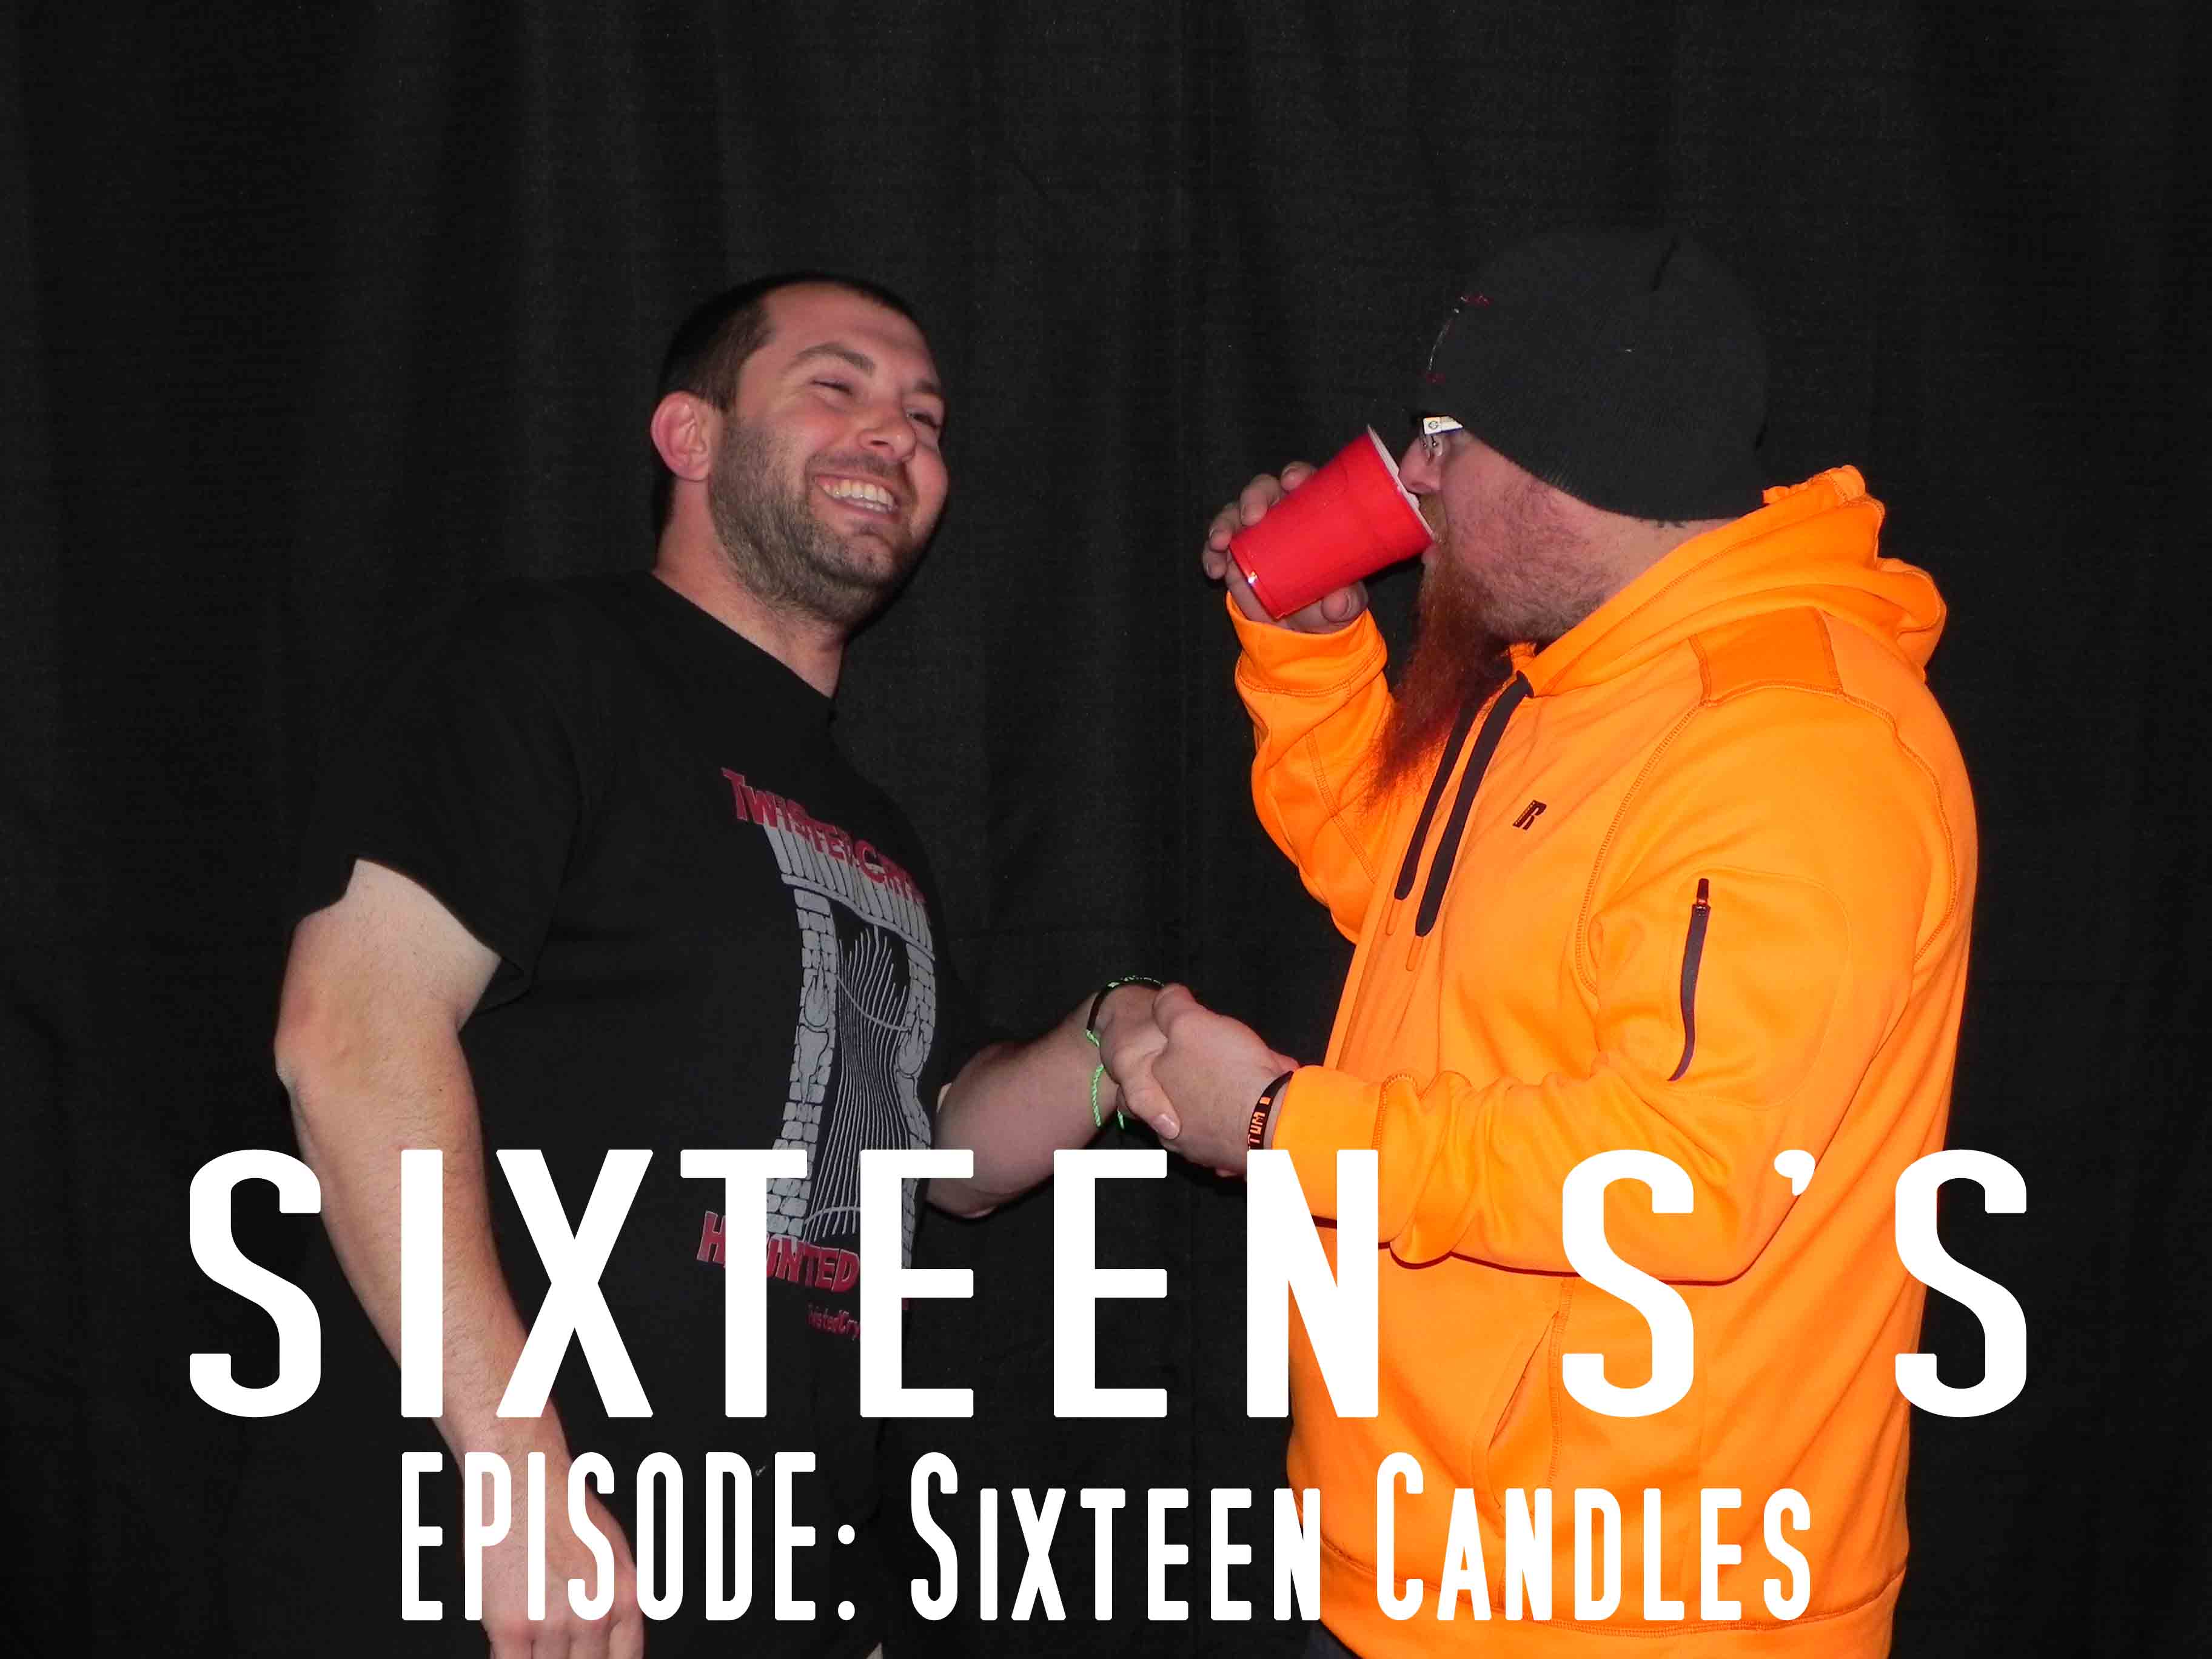 Sixteen S’s (Episode Sixteen Candles)